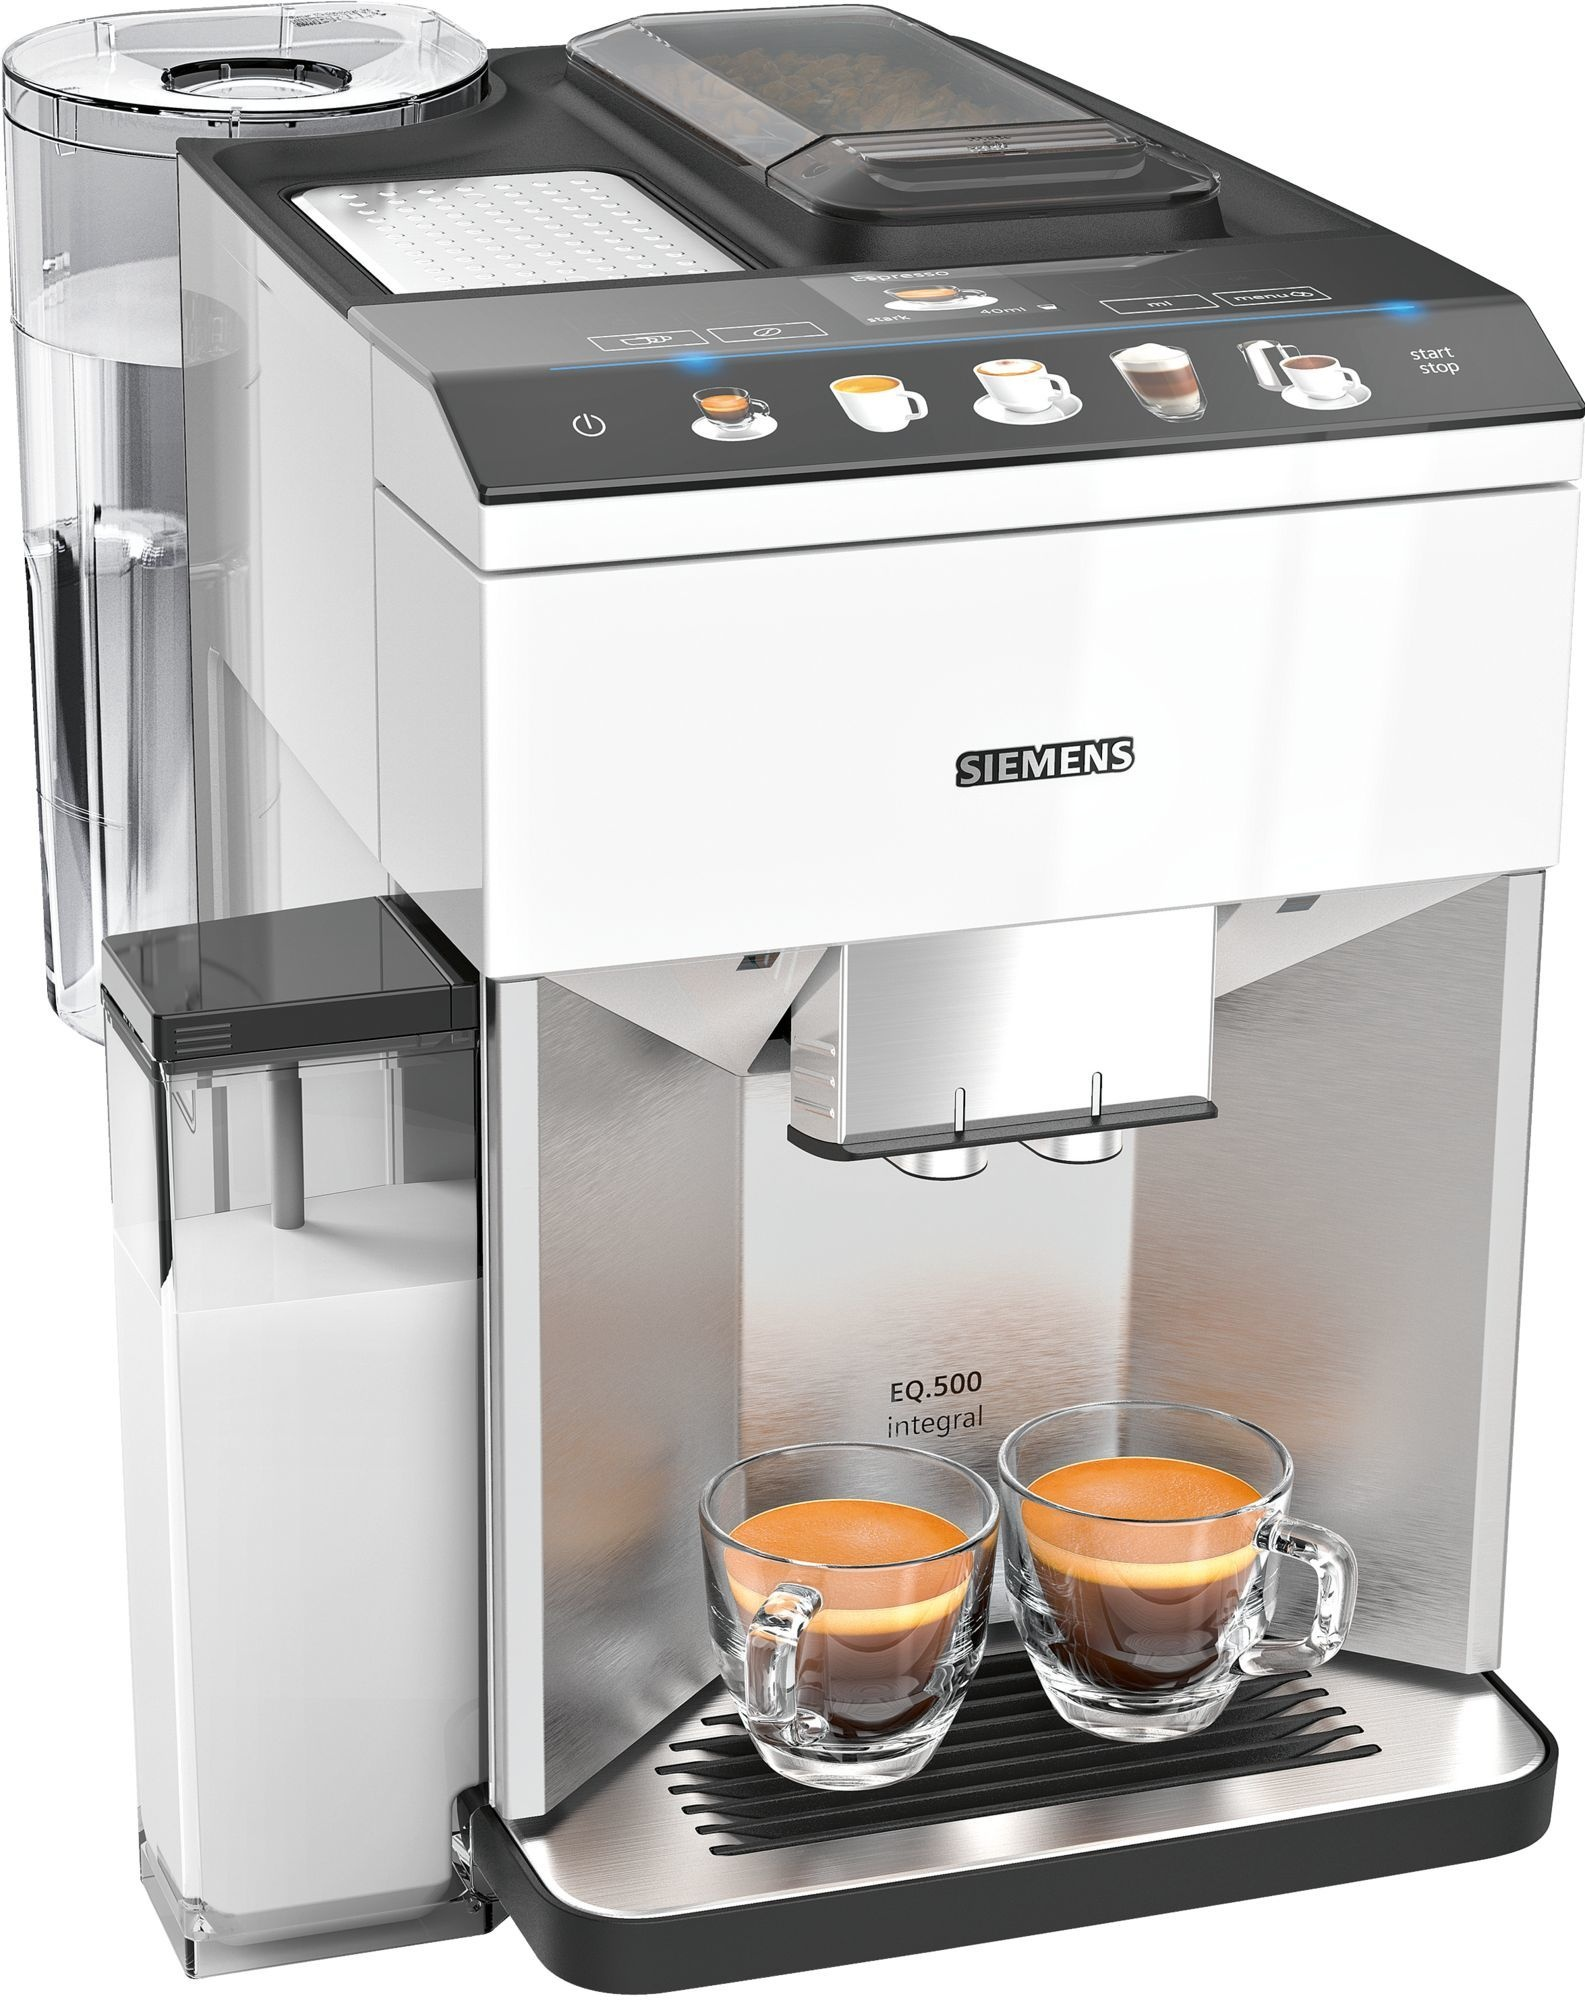 EQ.500 SIEMENS Weiss Kaffeevollautomat